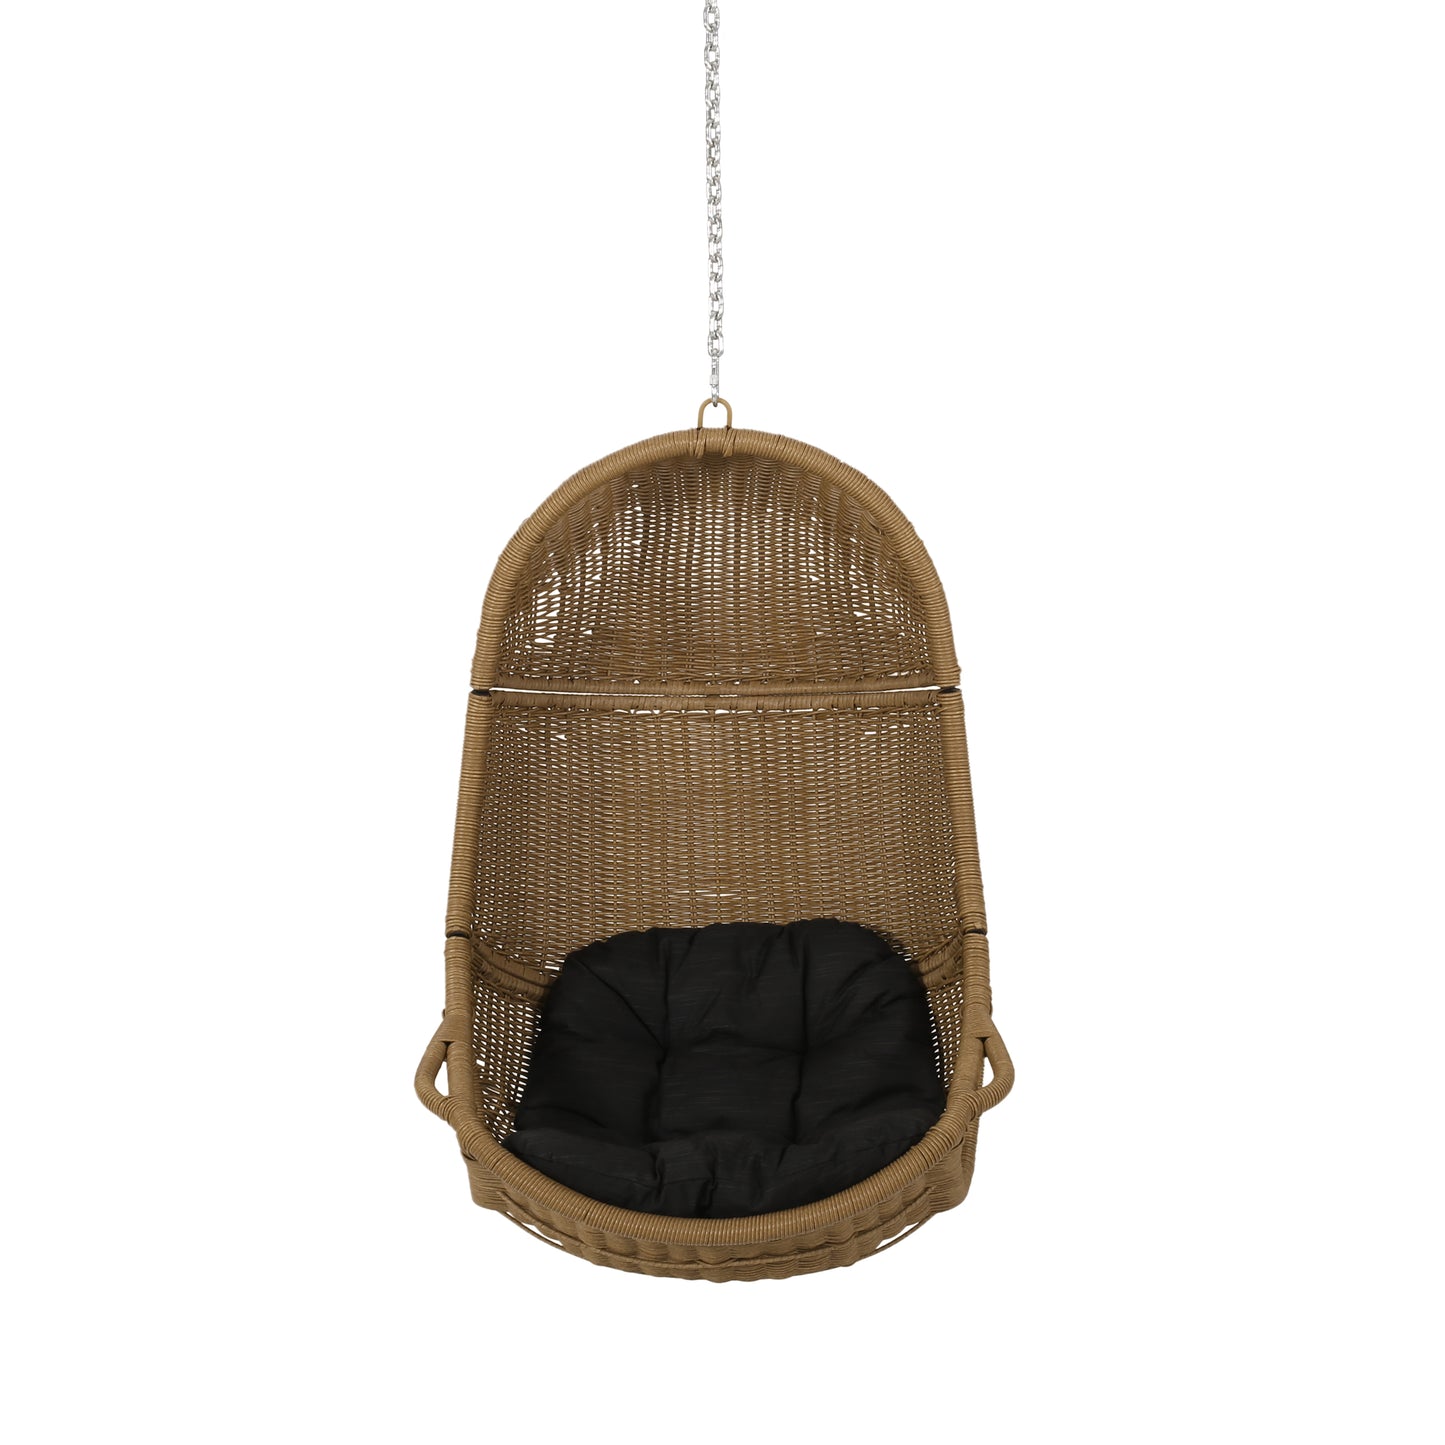 Berrien Orville Outdoor/Indoor Wicker Hanging Nest Chair (No Stand)